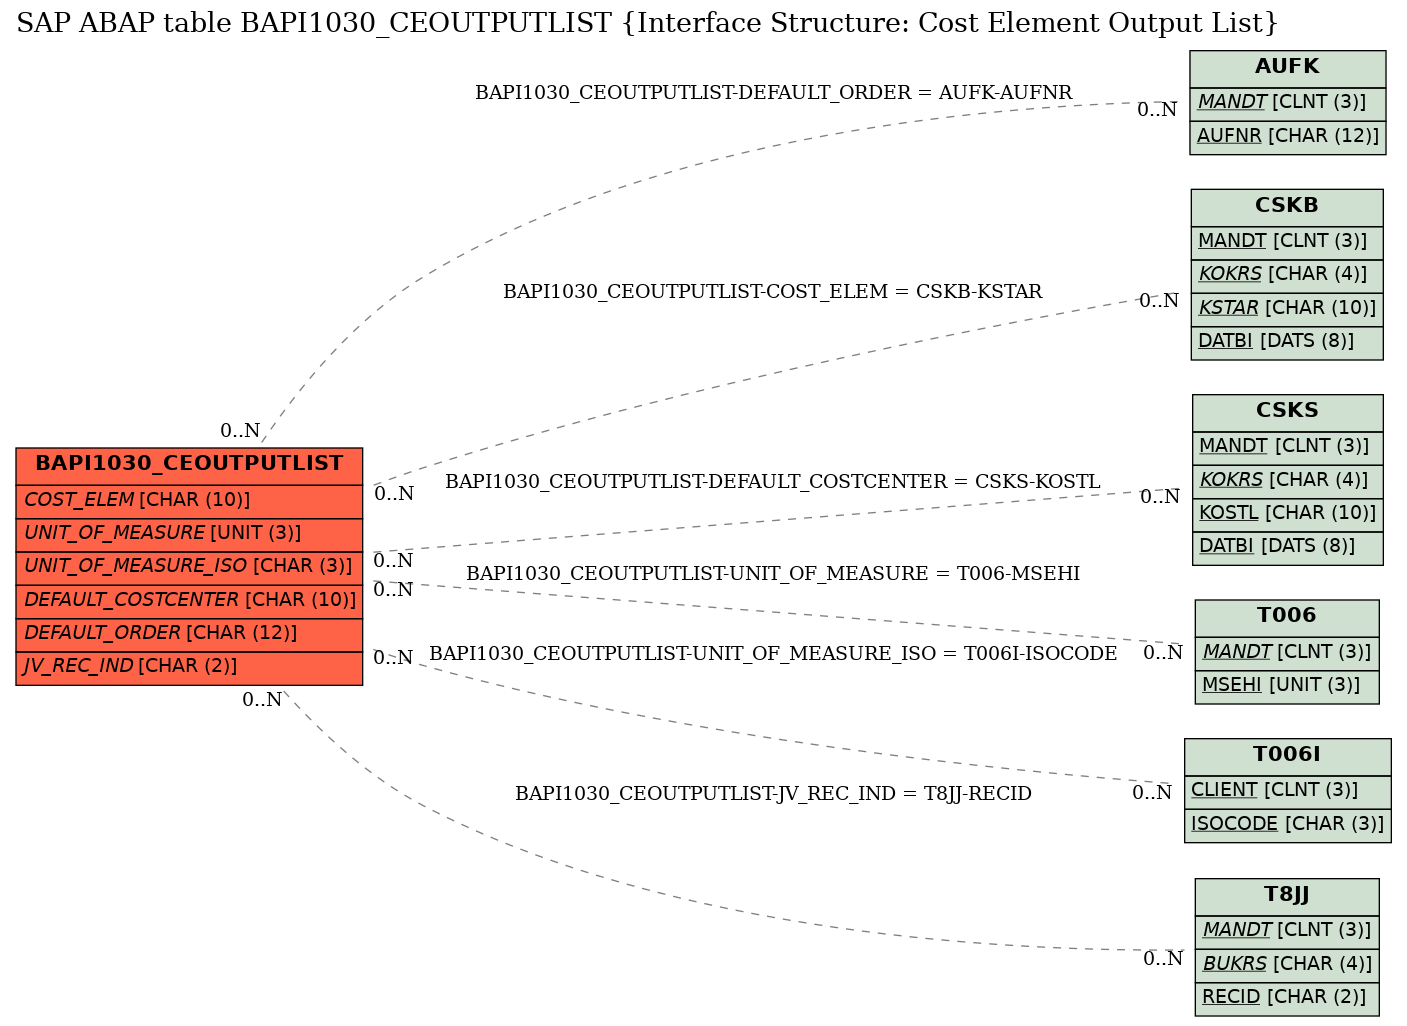 E-R Diagram for table BAPI1030_CEOUTPUTLIST (Interface Structure: Cost Element Output List)